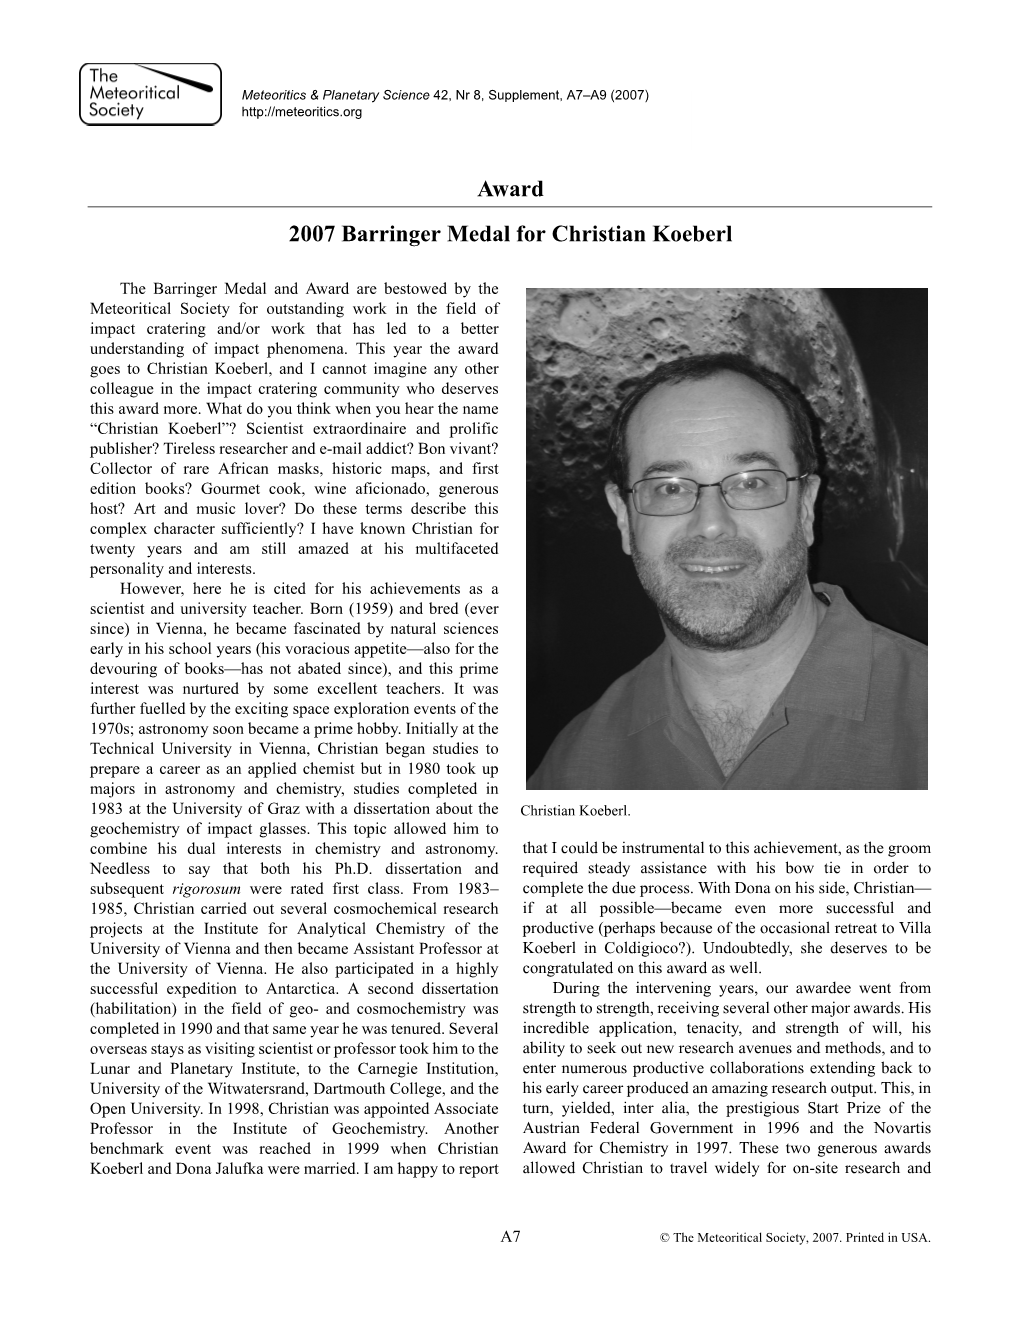 Award 2007 Barringer Medal for Christian Koeberl